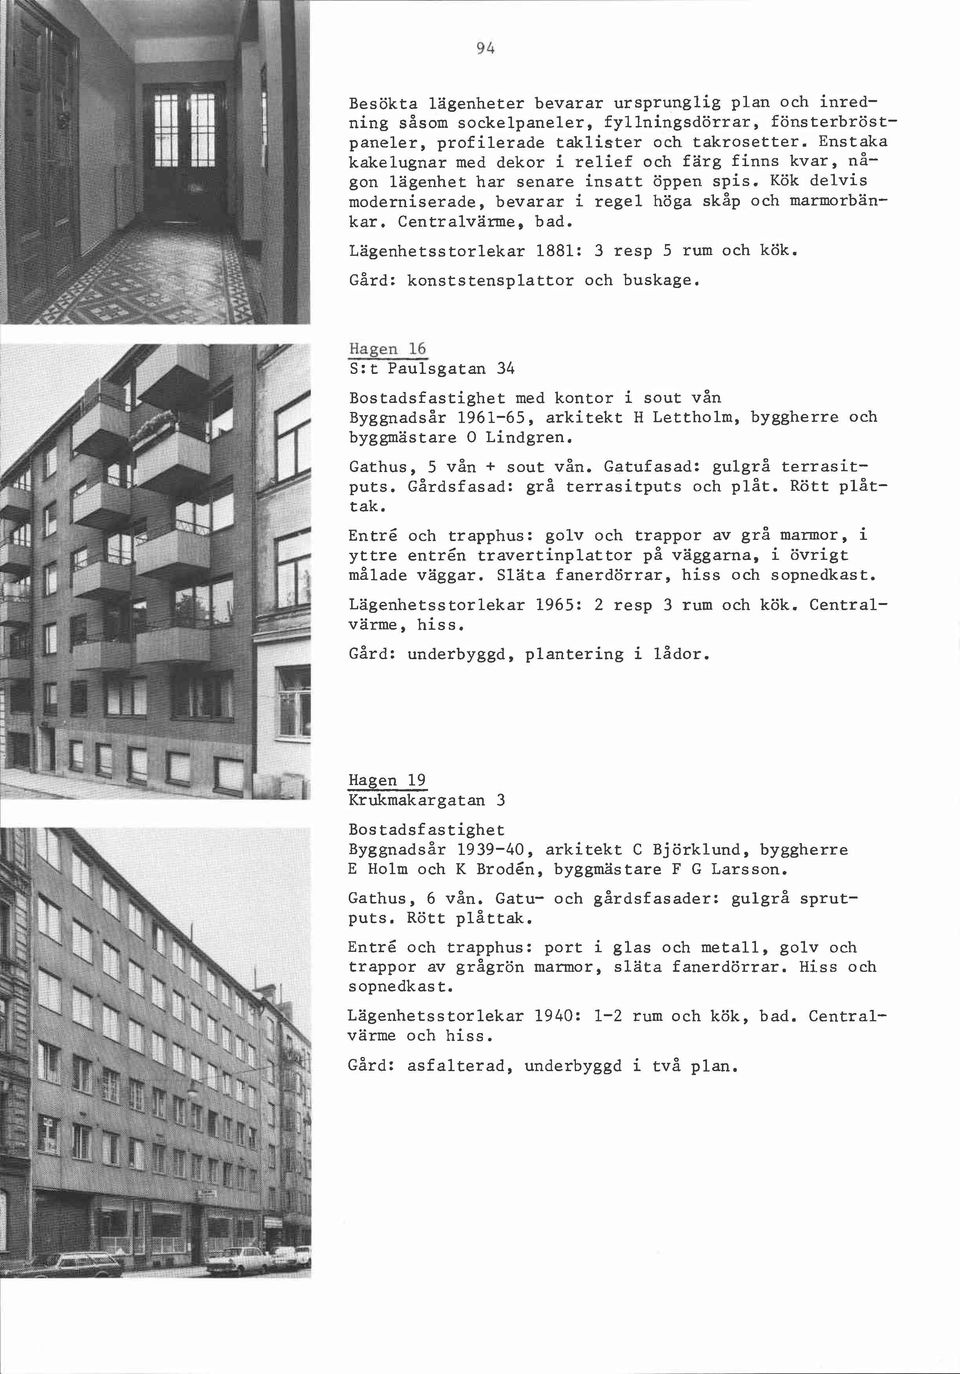 Lägenhetsstorlekar 1881: 3 resp 5 rum och kök. Gård: konststensplattor och buskage.